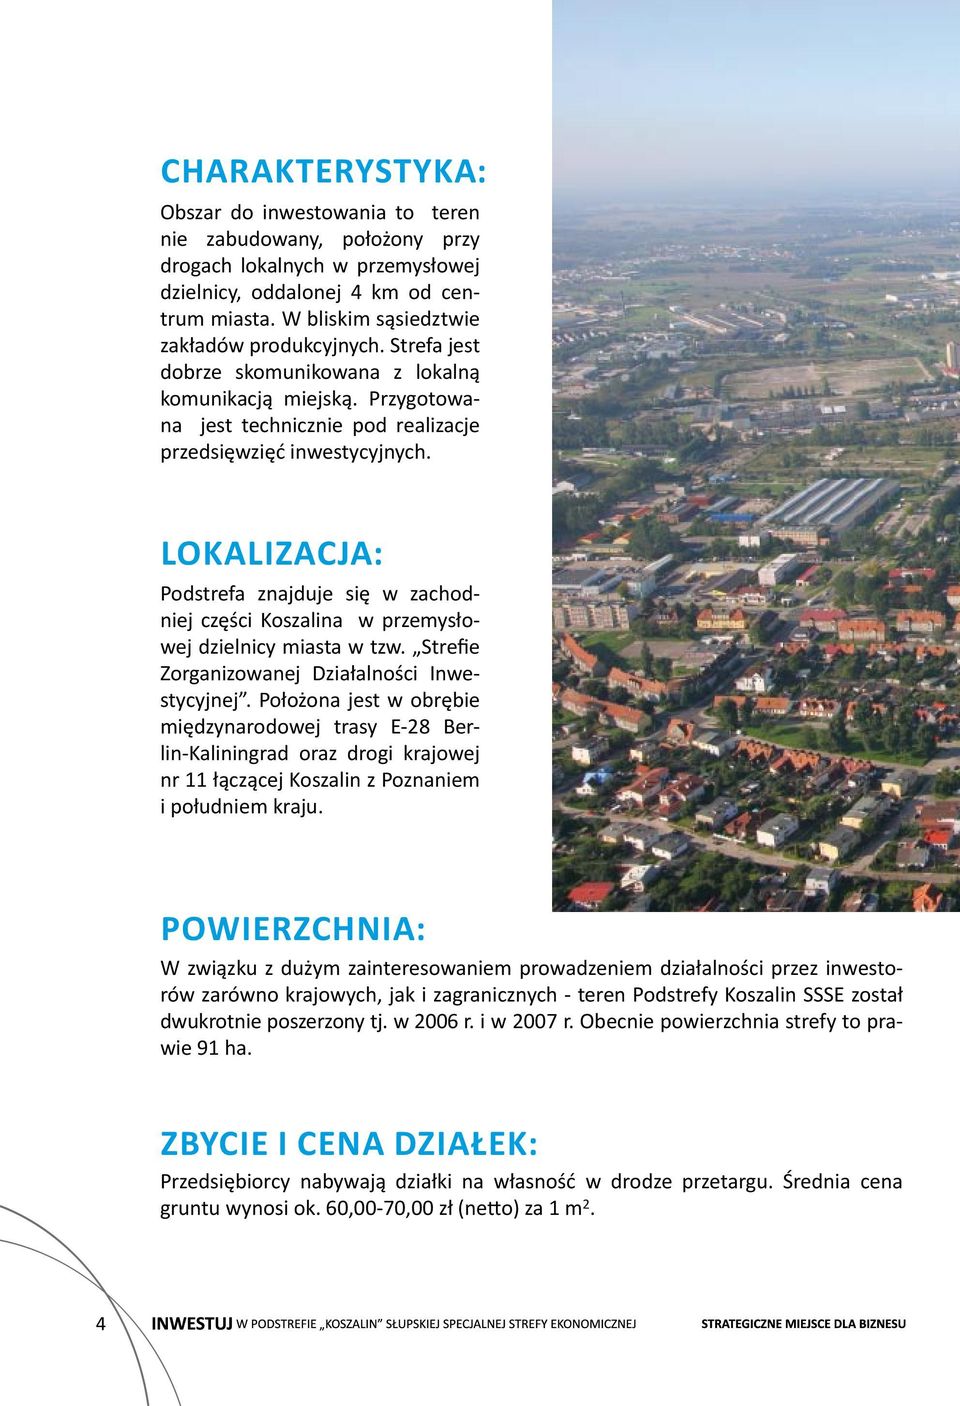 Lokalizacja: Podstrefa znajduje się w zachodniej części Koszalina w przemysłowej dzielnicy miasta w tzw. Strefie Zorganizowanej Działalności Inwestycyjnej.